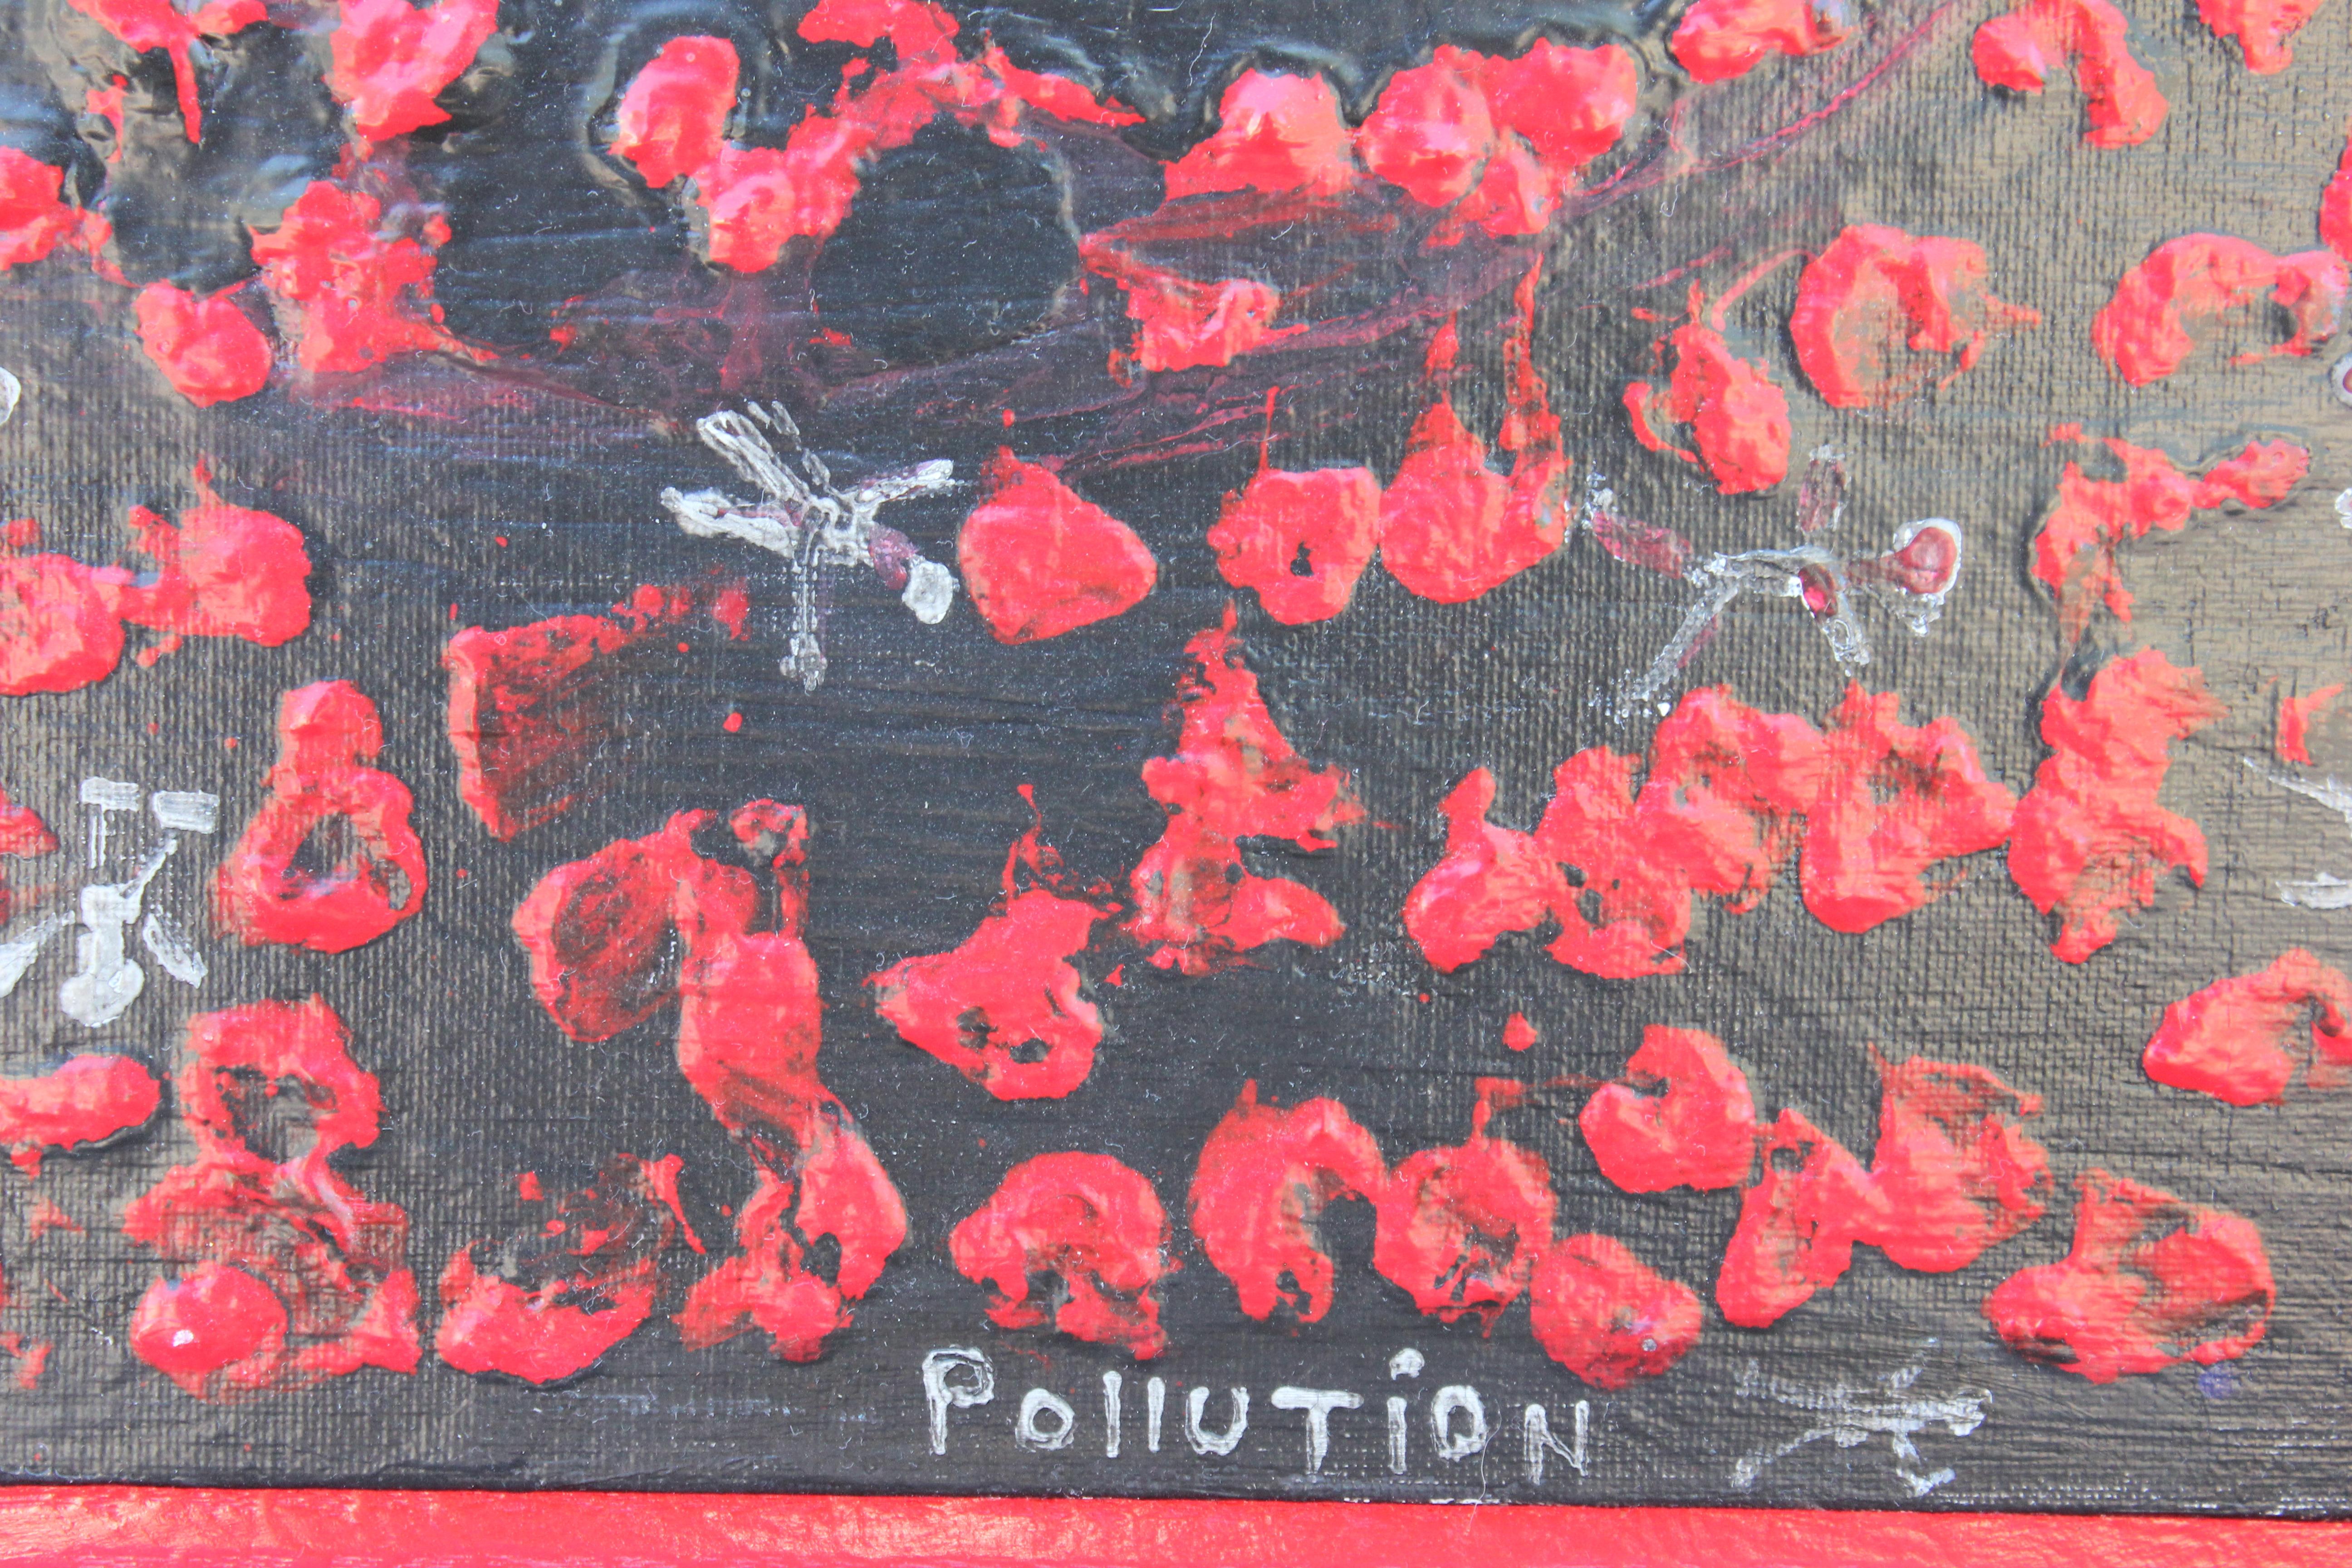 „ „Pollution““ Rotes und schwarzes abstraktes Gemälde (Zeitgenössisch), Painting, von Paul Reeves